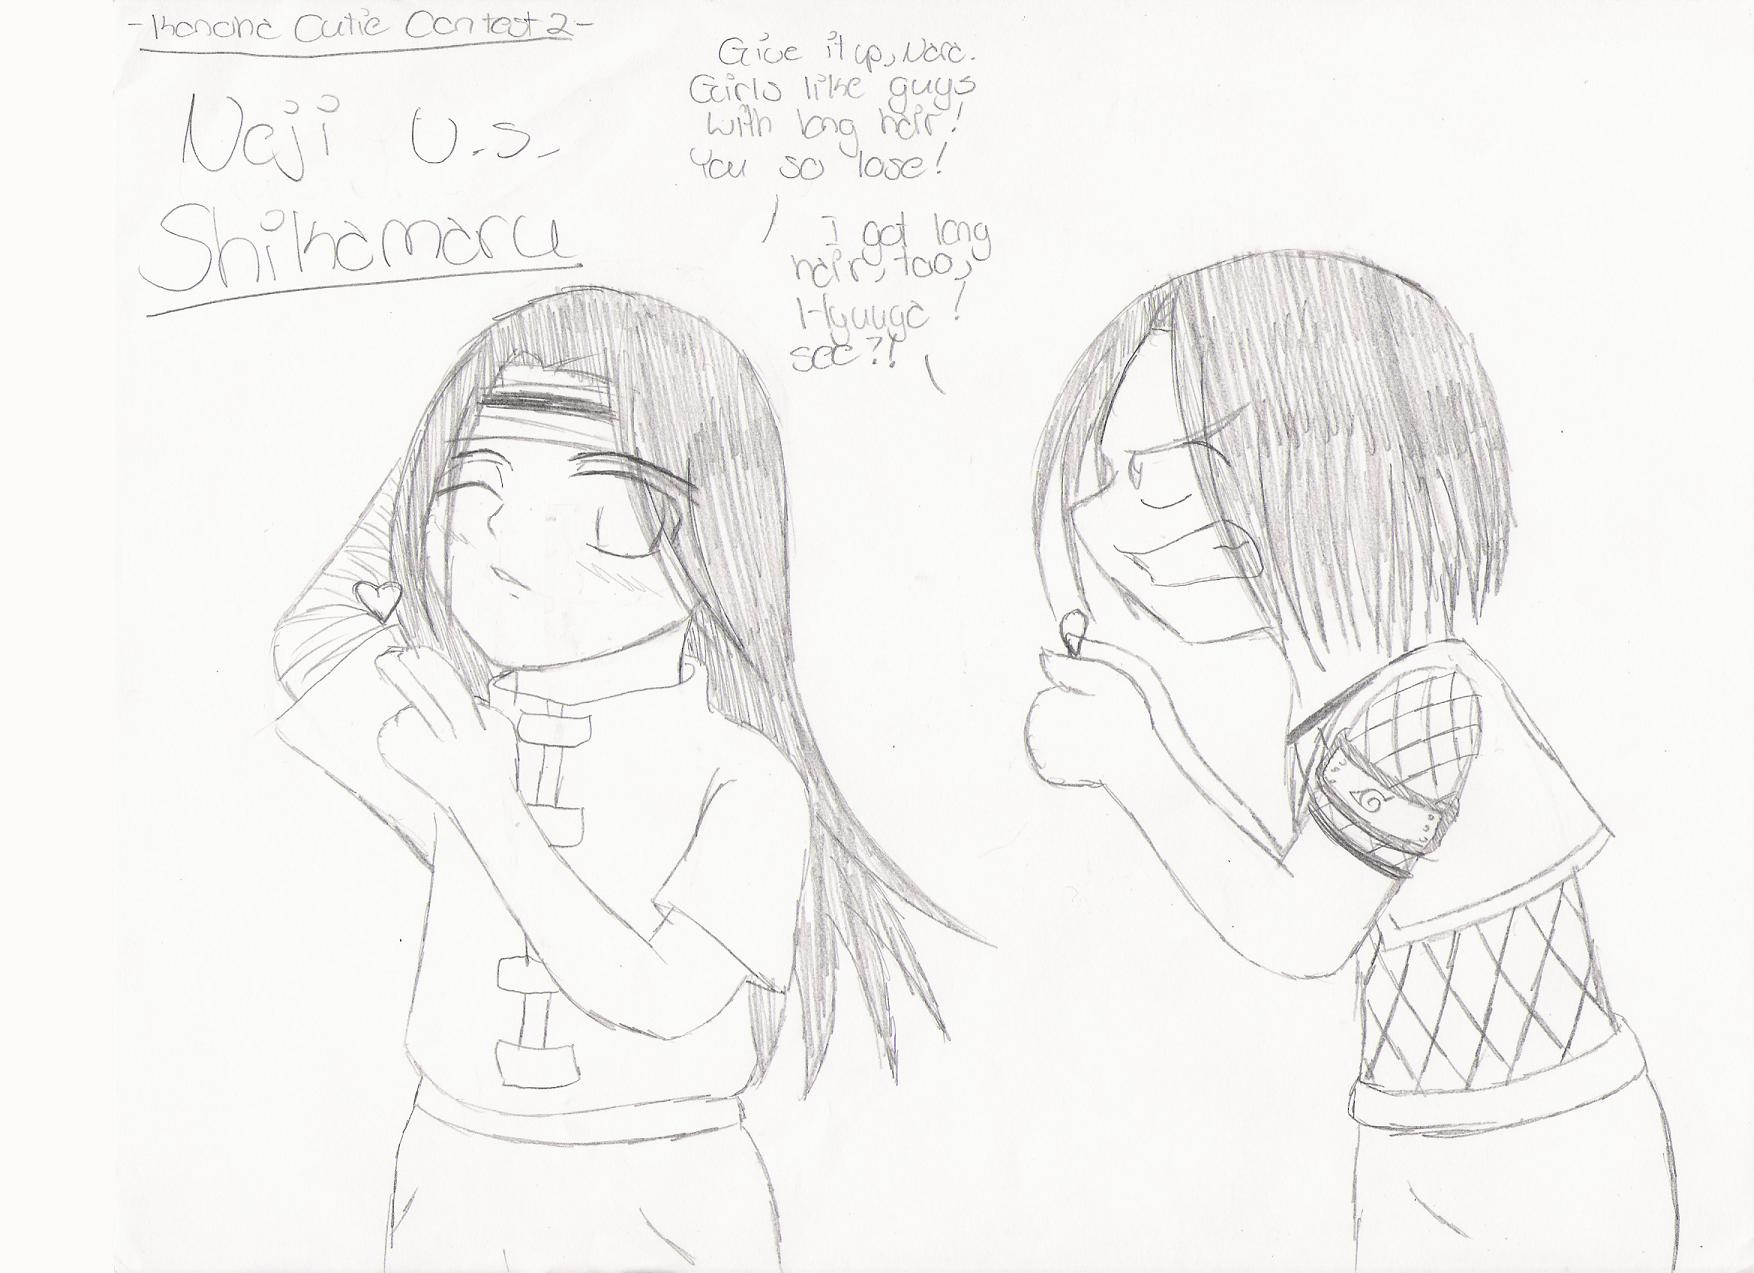 *Konoha Cutie Contest 2- Neji vs Shikamaru* by KrimzenAngel